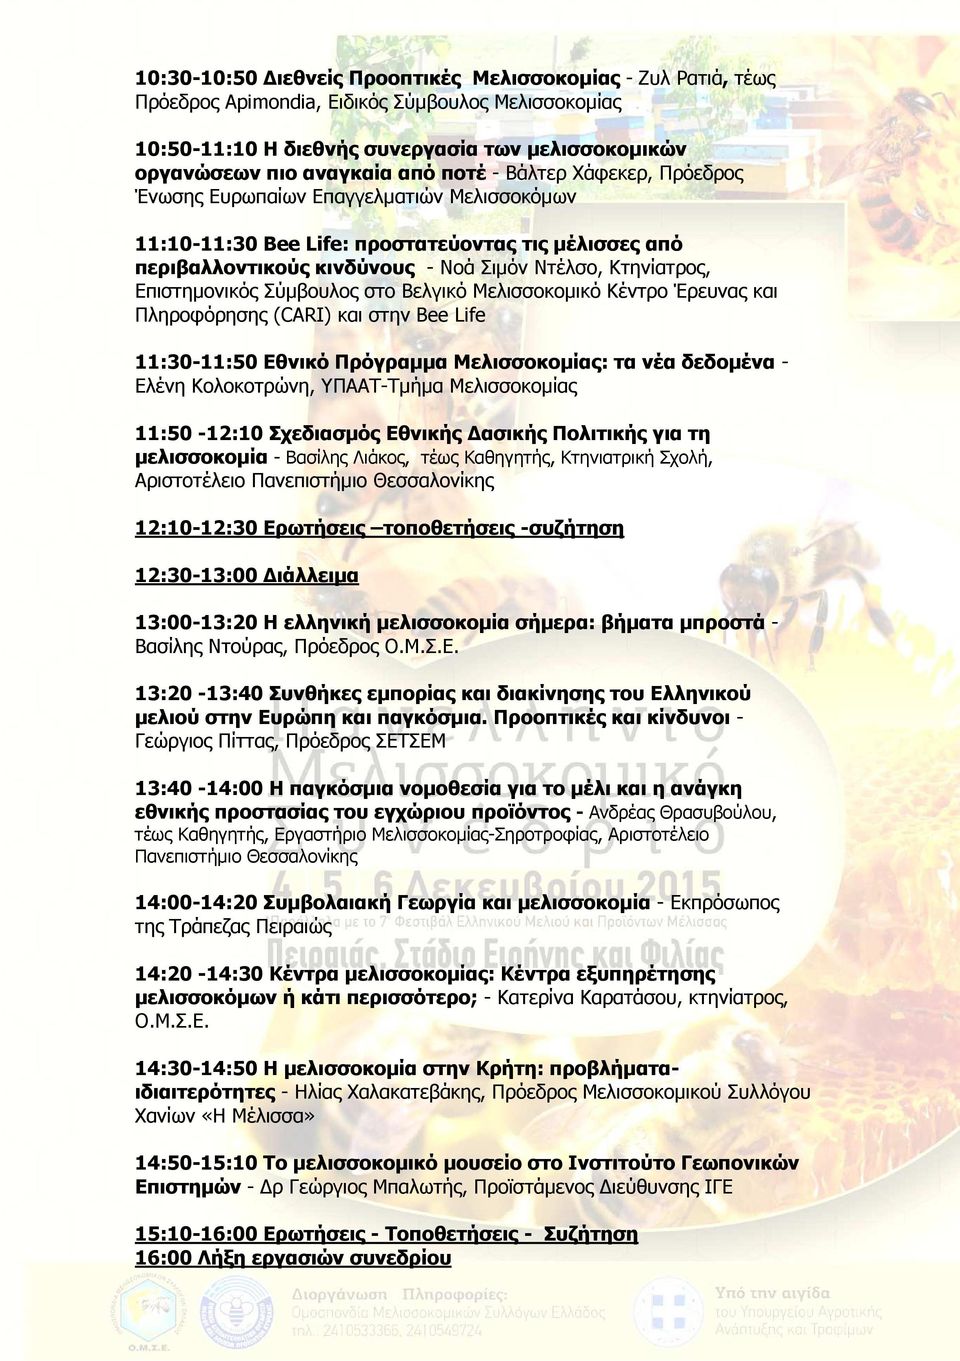 Σύµβουλος στο Bελγικό Μελισσοκοµικό Κέντρο Έρευνας και Πληροφόρησης (CARI) και στην Bee Life 11:30-11:50 Εθνικό Πρόγραµµα Μελισσοκοµίας: τα νέα δεδοµένα - Ελένη Κολοκοτρώνη, ΥΠΑΑΤ-Τµήµα Μελισσοκοµίας